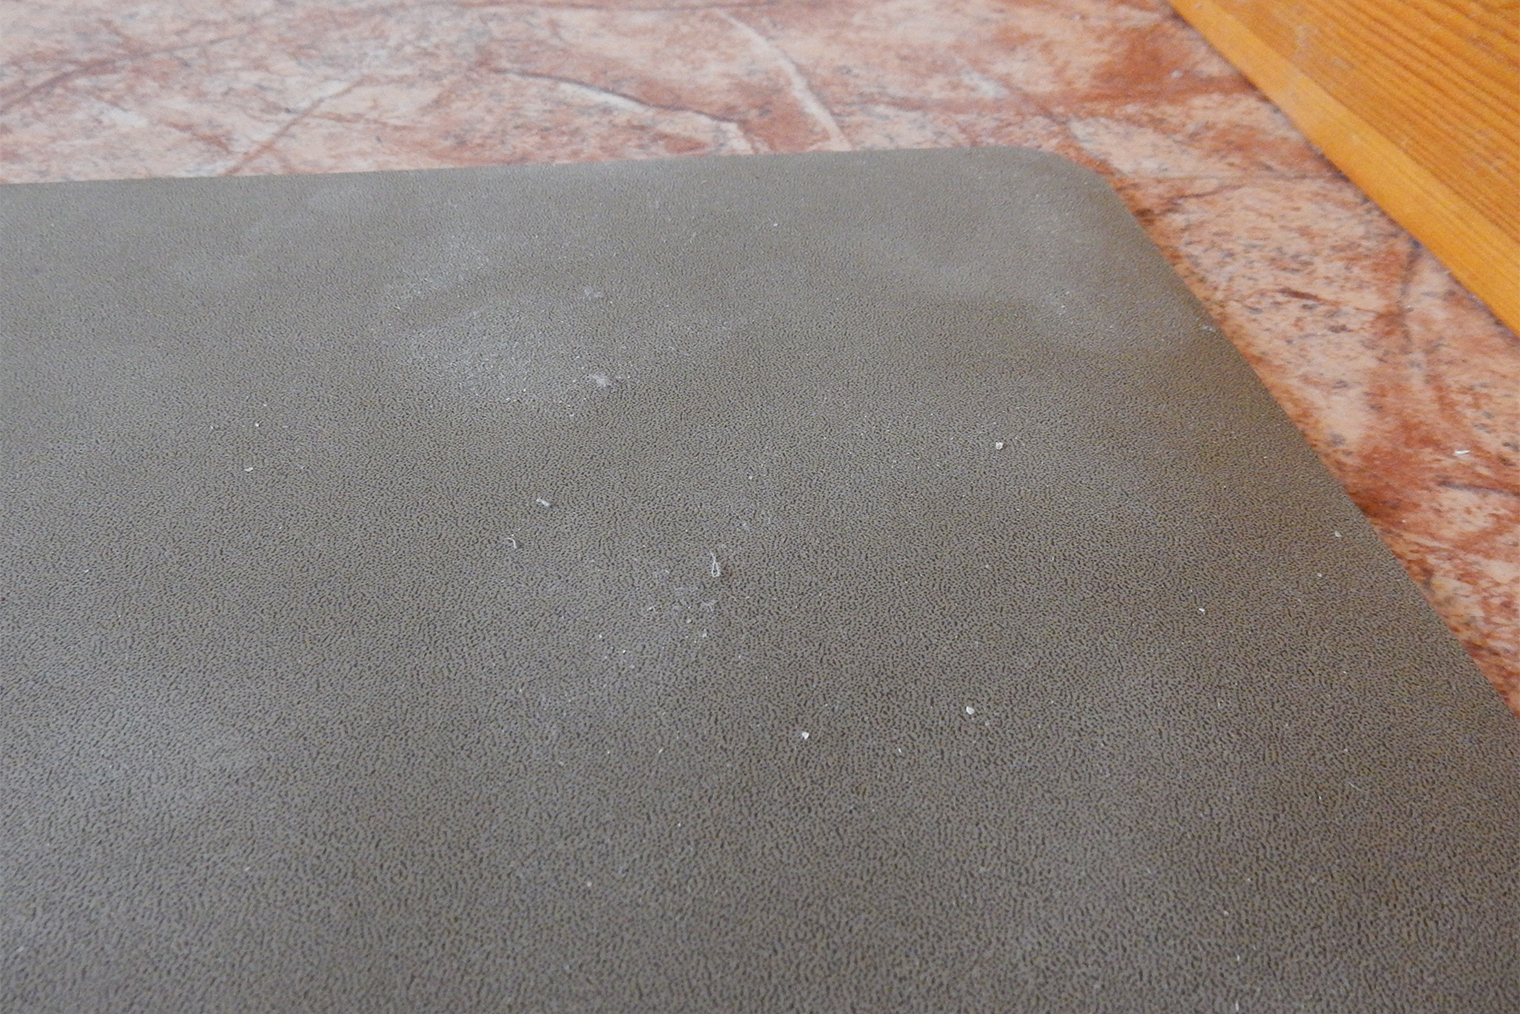 Это мой коврик, который я оставила на полу на сутки, — на нем скопилась пыль, видны следы от ступней